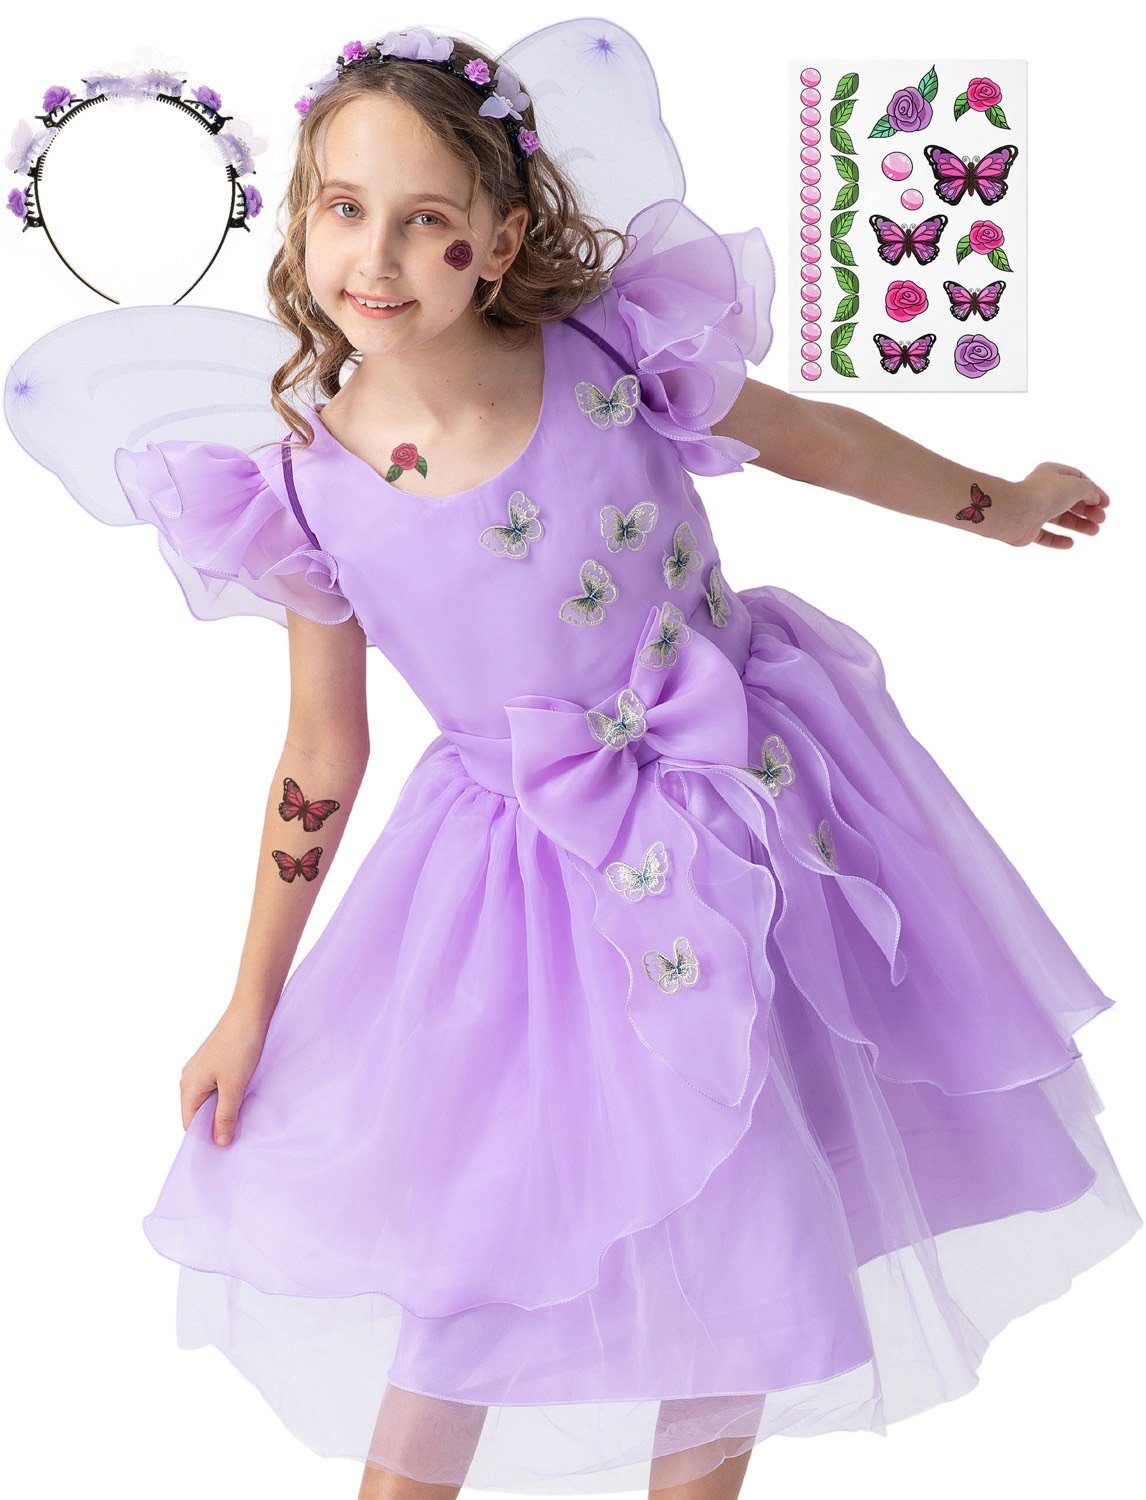 Corimori Prinzessin-Kostüm Prinzessin Kleid Kostüm-Set für Kinder Schmetterling Mira, Feenkleid, Kostüm Mira für Fasching, lila, Größe 122/128